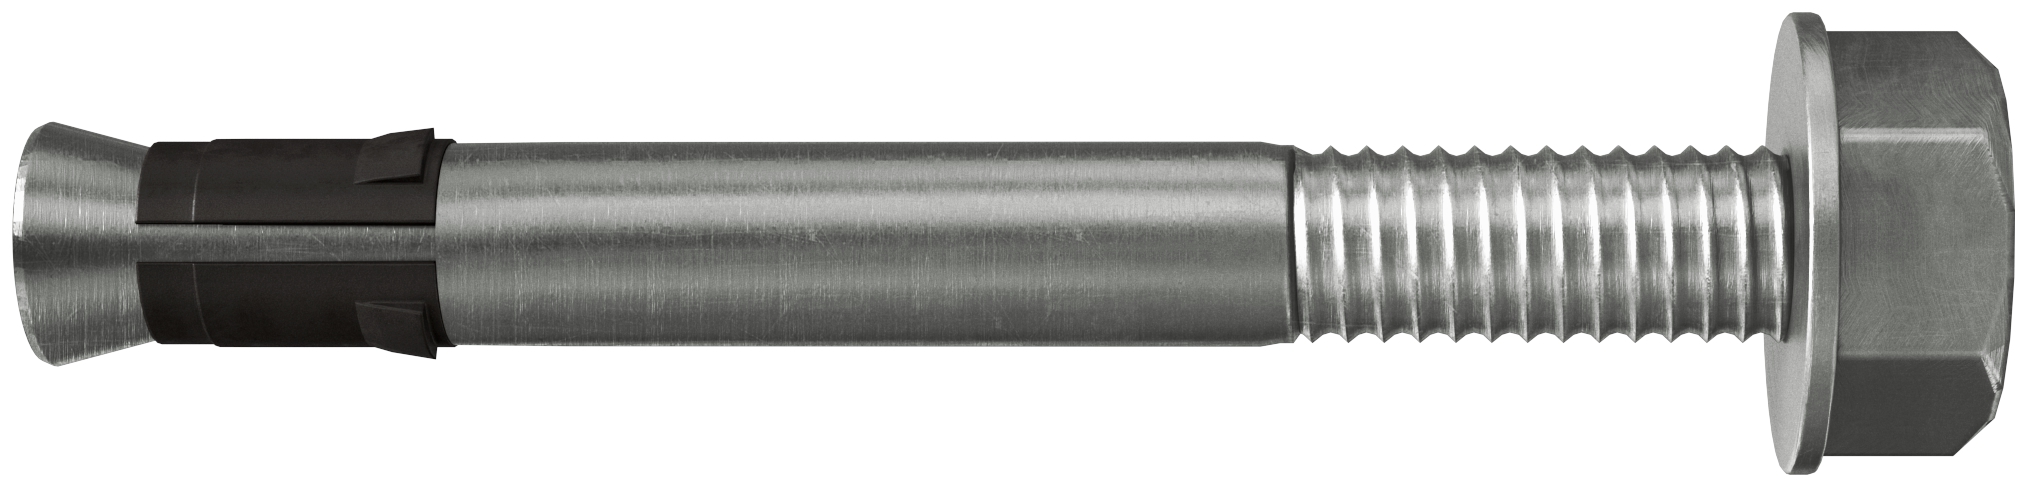 Fischer FNA II 6 x 30 M6/5 HCR. Der montagefreundliche Schlaganker aus hochkorrosionsbeständigem Stahl mit Gewinde und Flanschmutter für die Mehrfachbefestigung.